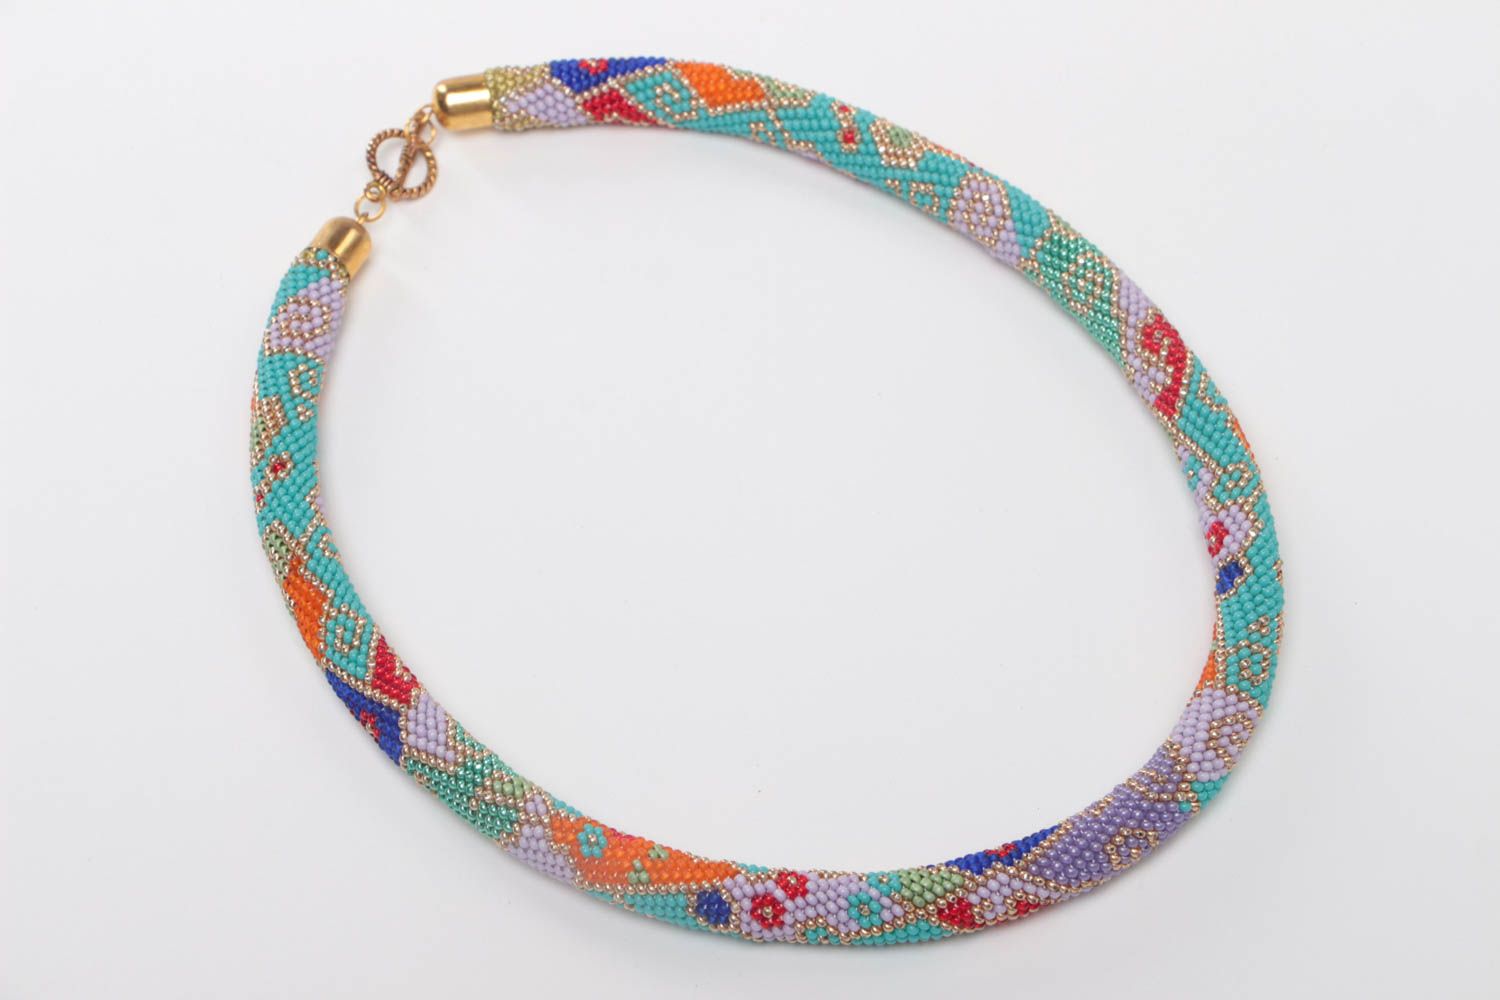 Ожерелье из бисера в форме жгута цветное стильное необычное модное ручной работы фото 2